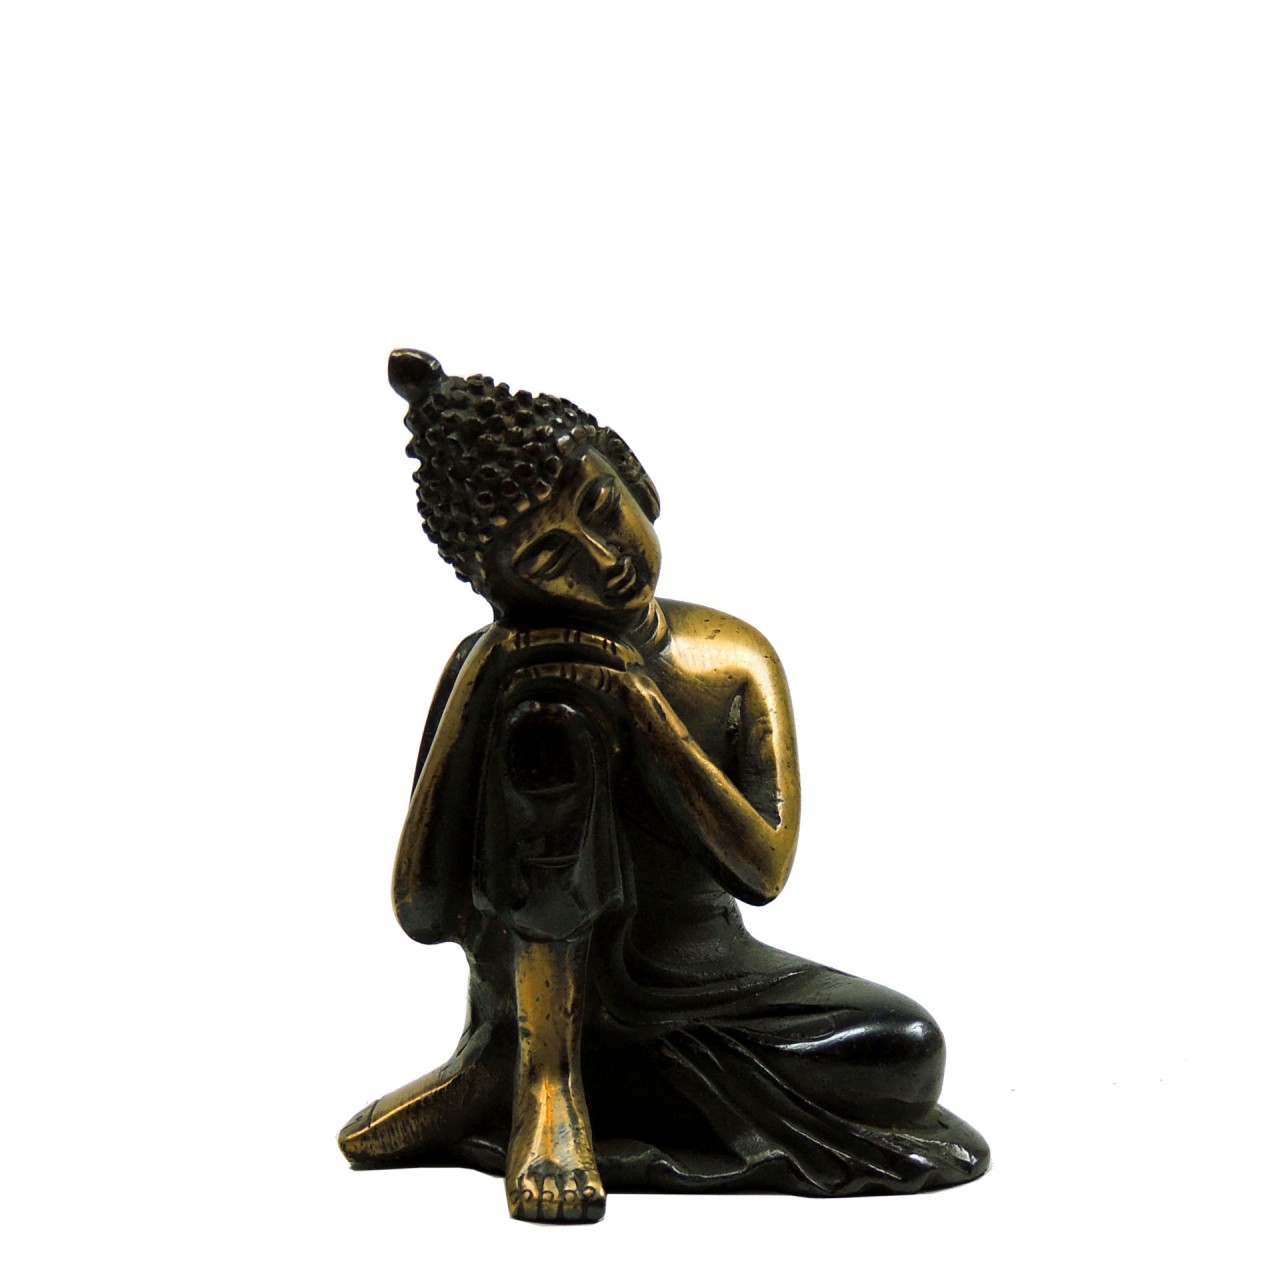 Sleeping Buddha Messing braun goldfarben 9cm